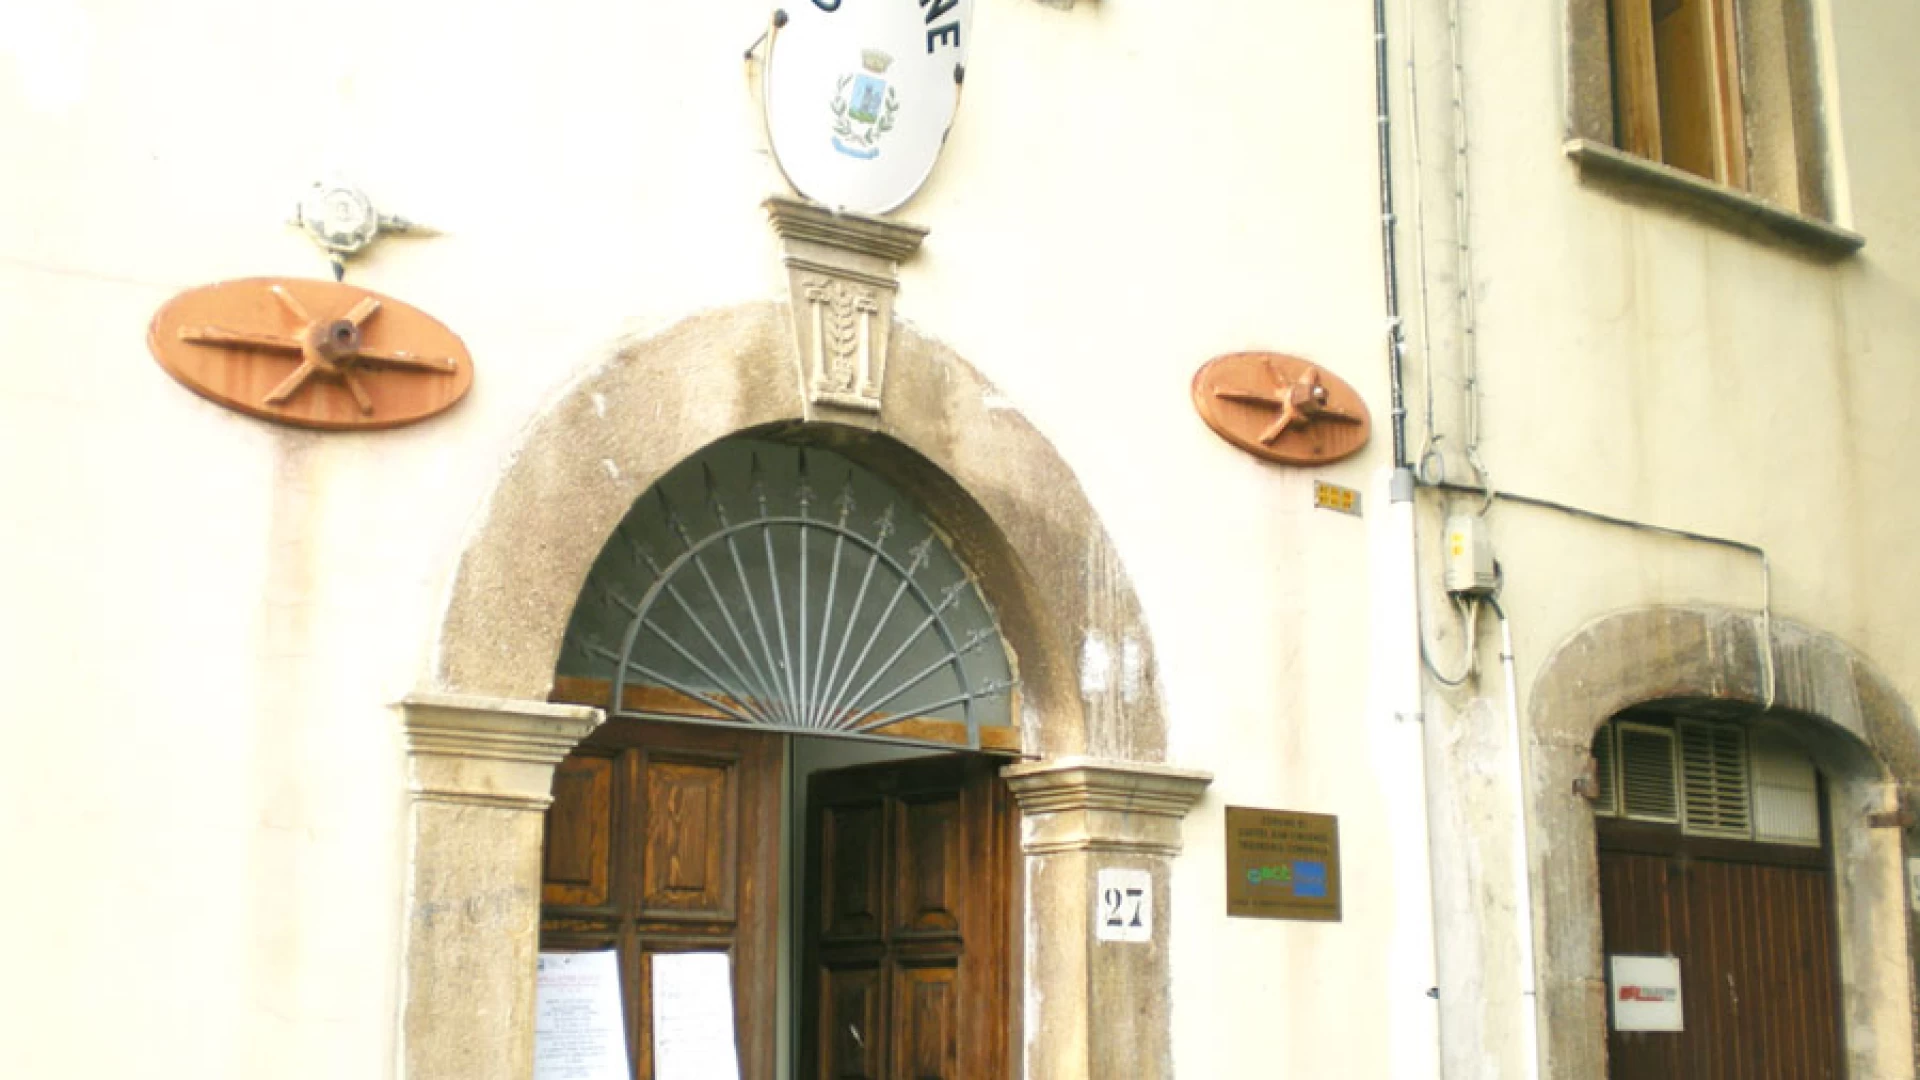 Castel San Vincenzo: la nota del Consigliere comunale di minoranza Giuseppe Iannotta. "Il nostro Consiglio comunale ancora non è convalidato per intero".